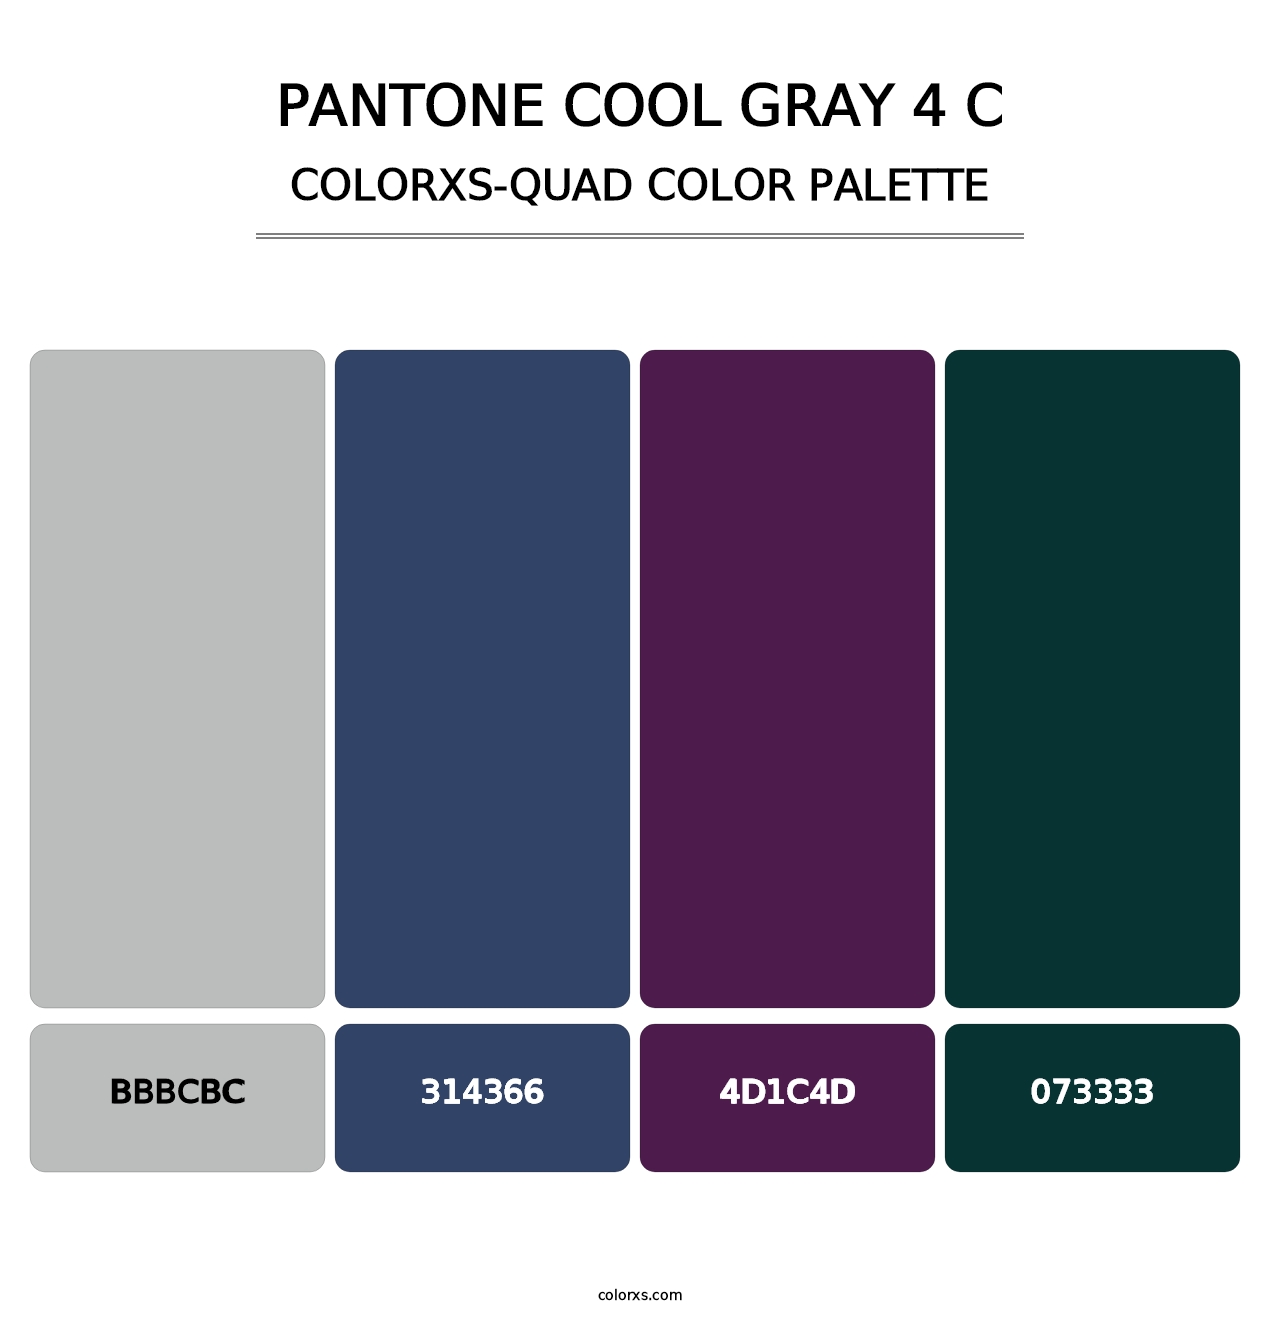 PANTONE Cool Gray 4 C - Colorxs Quad Palette